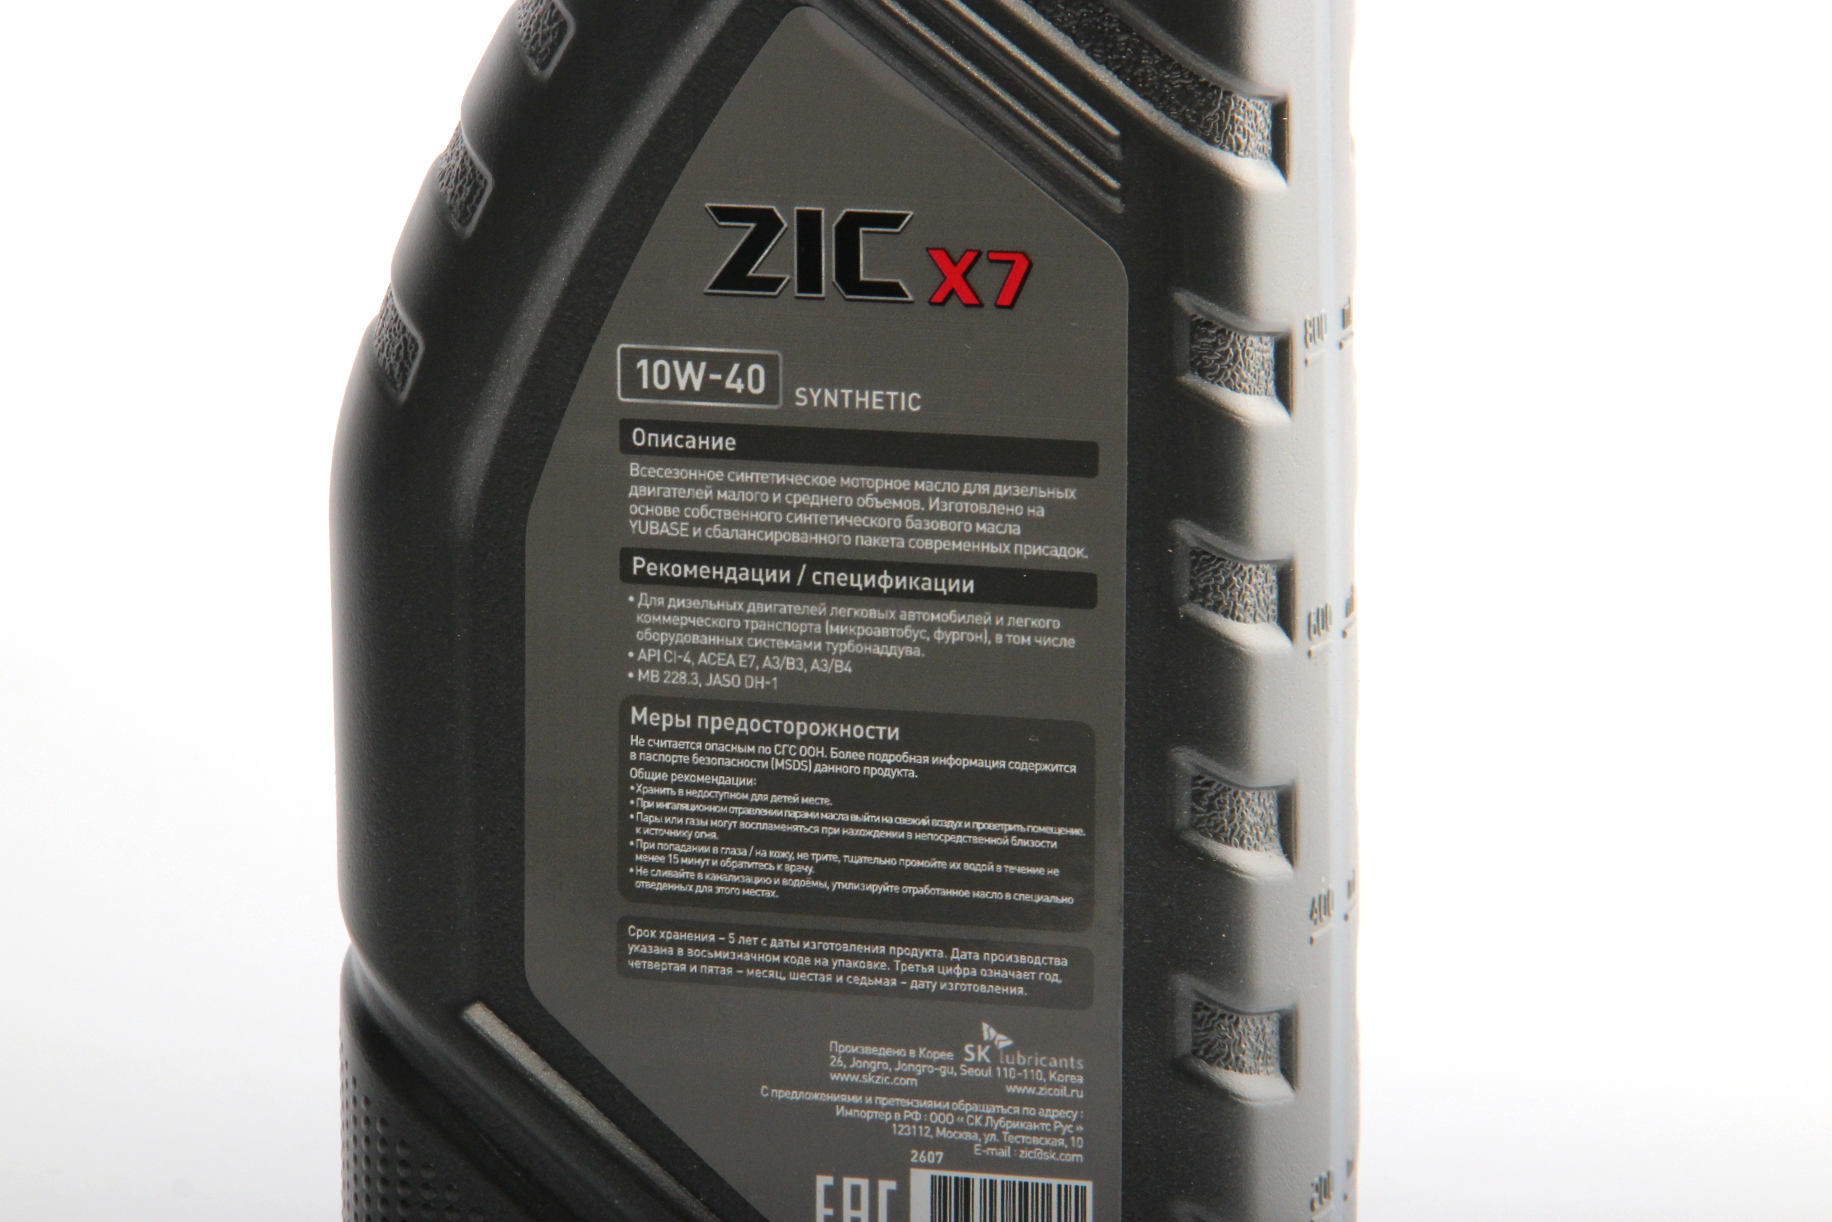 Zic x7 10w40. ZIC x7000 AP 10w-40 20 л. ZIC x7 10w-40 Synthetic. Масло ZIC 10w 40 синтетика. ZIC x7 5w-40 4 л.